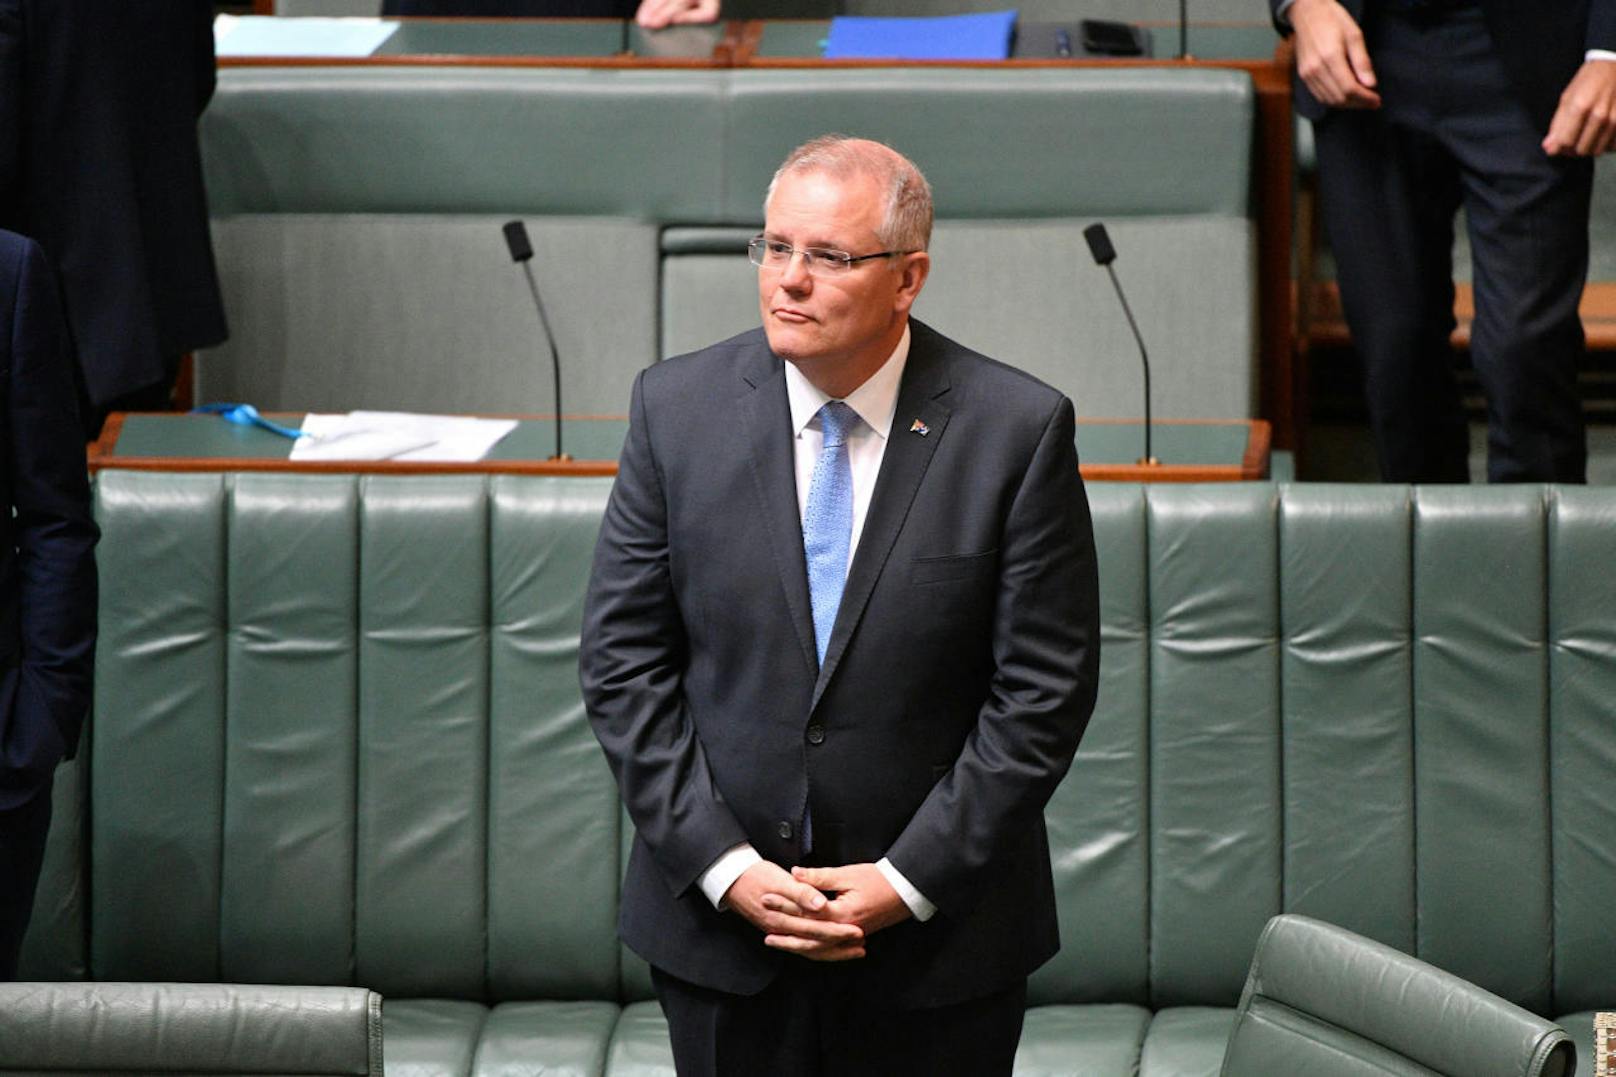 <b>Platz 5: Australien</b>
Scott Morrison, Premierminister von Australien, ist Spitzenverdiener unter den westlichen Regierungschefs. Er bekommt jährlich <b>455.700 Euro</b>, das Elffache eines durchschnittlichen australischen Jahreseinkommens von 40.800 Euro.